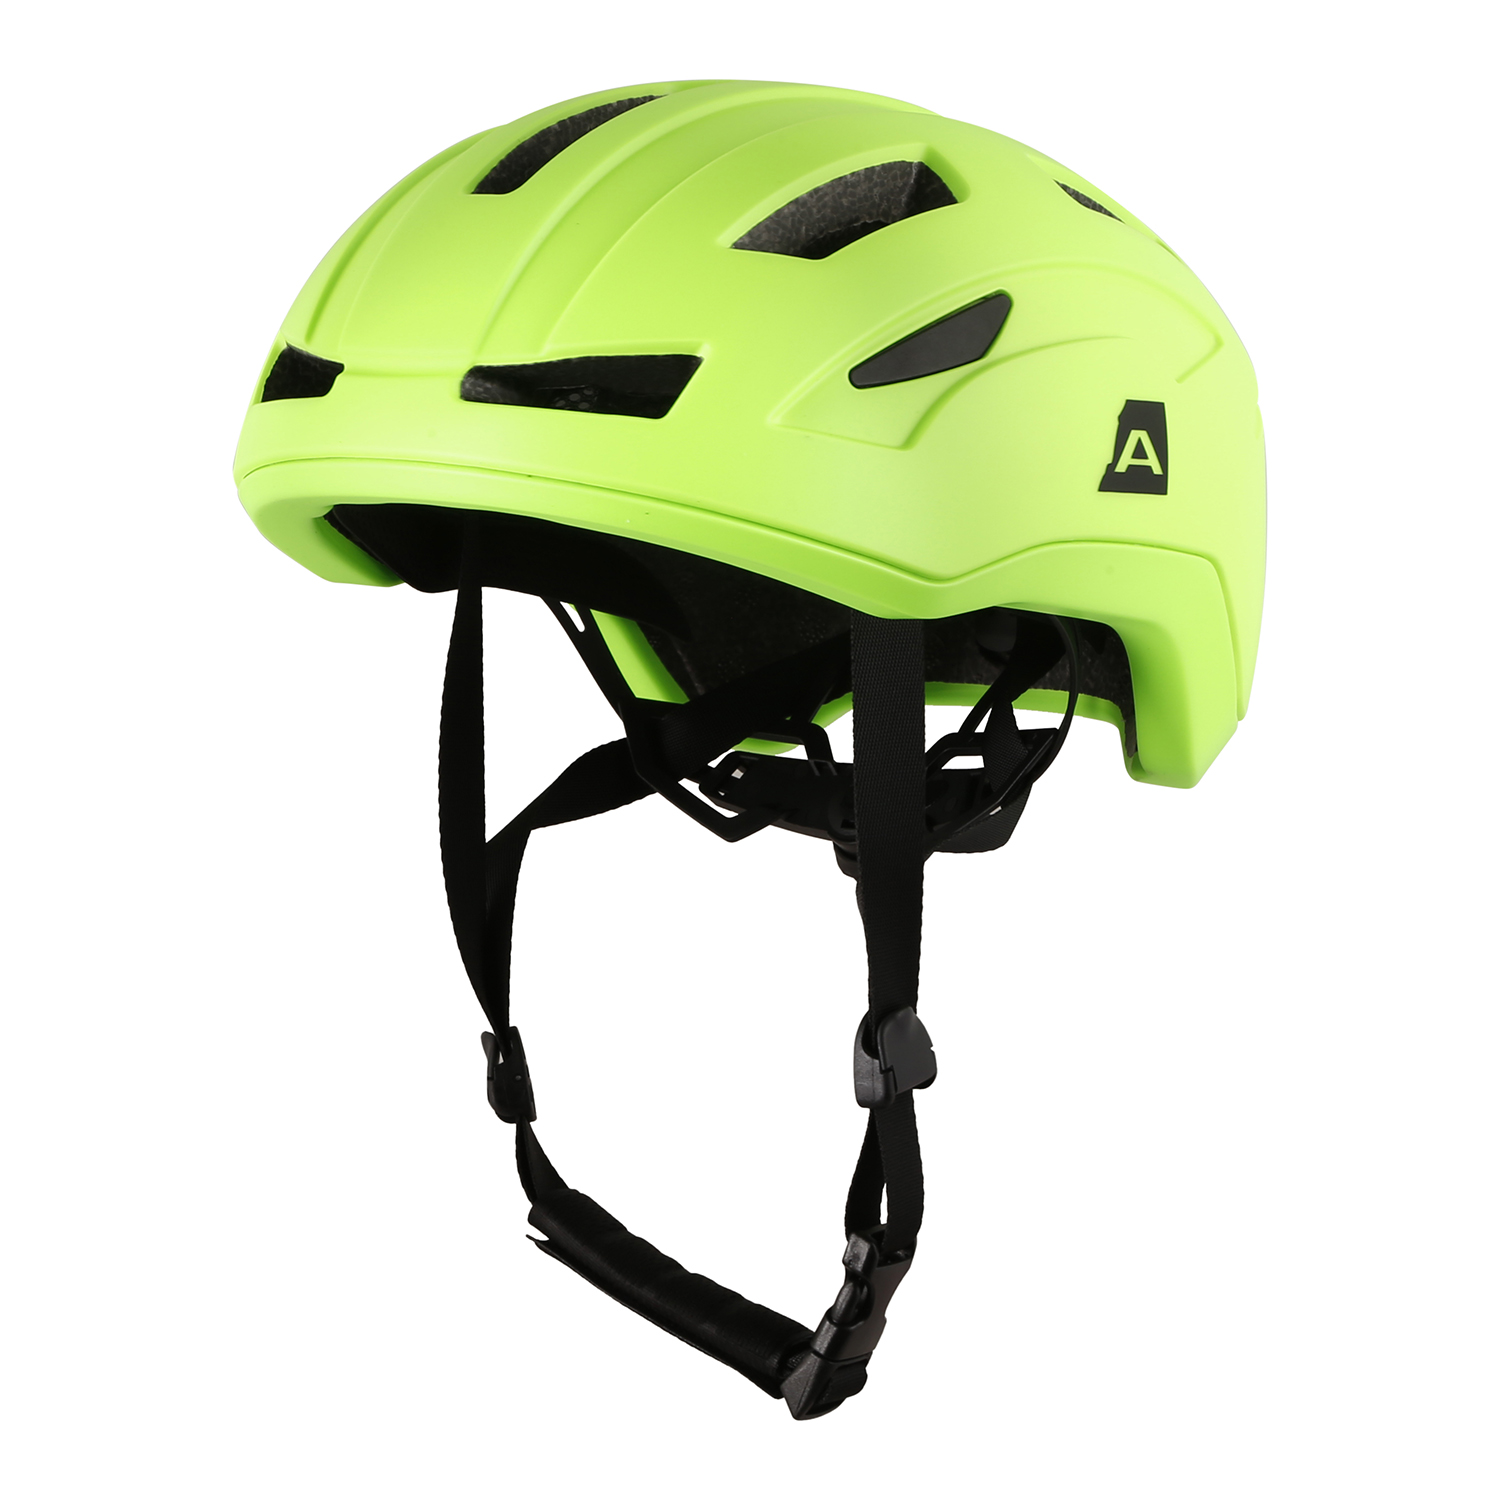 Kids Cycling Helmet Ap 52-56 Cm AP OWERO Sulphur Spring